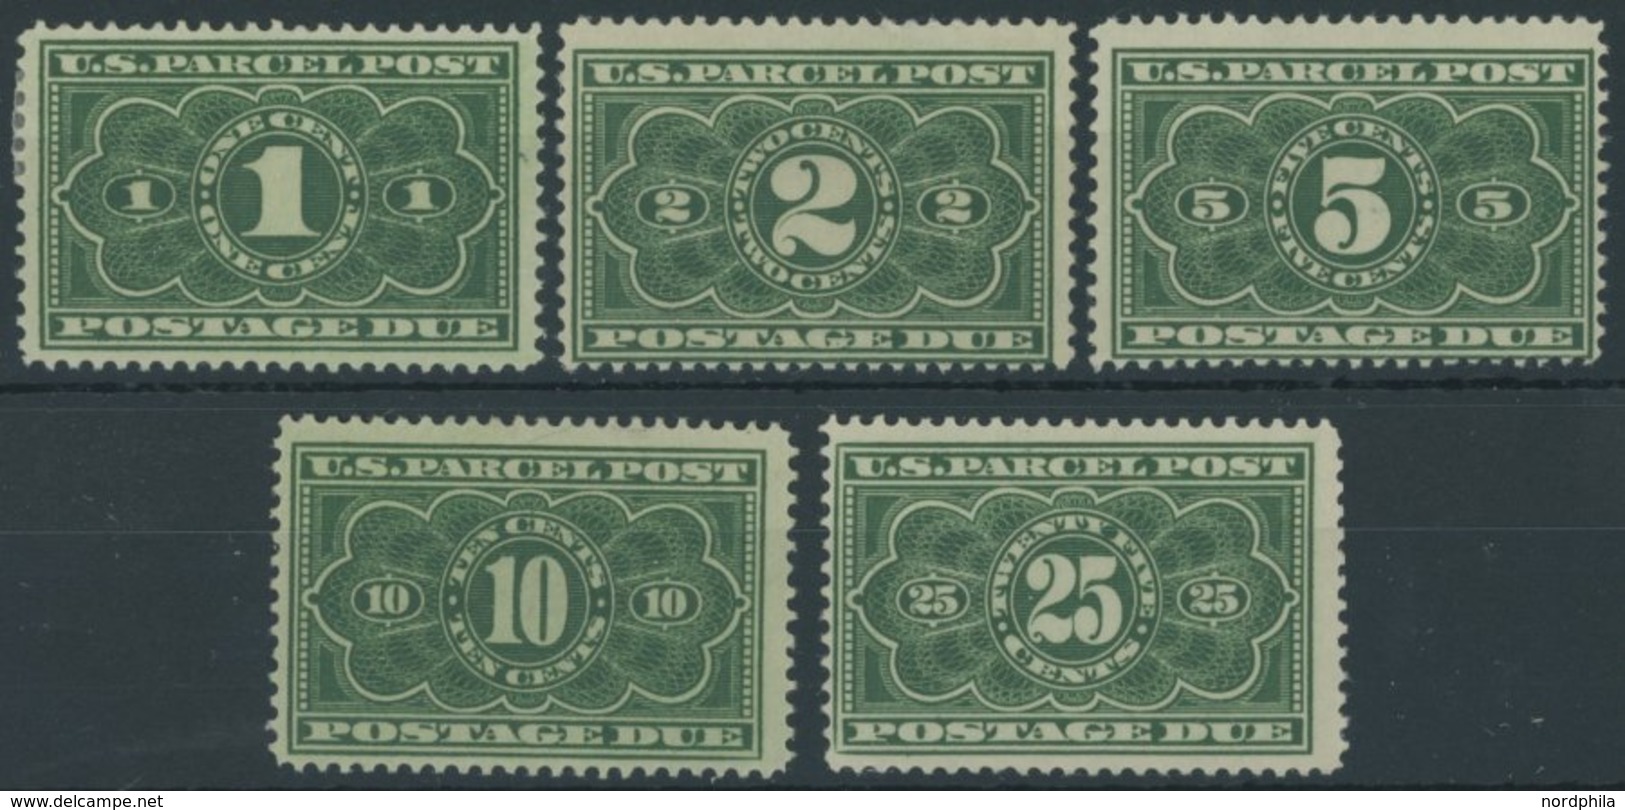 PAKET-PORTOMARKEN PP 1-5 **,* , Scott JQ 1-5, 1912, 1 - 25 C. U.S. Parcel Post Postage Due, Mi.Nr. 1 Und 4 Falzrest, Son - Colis